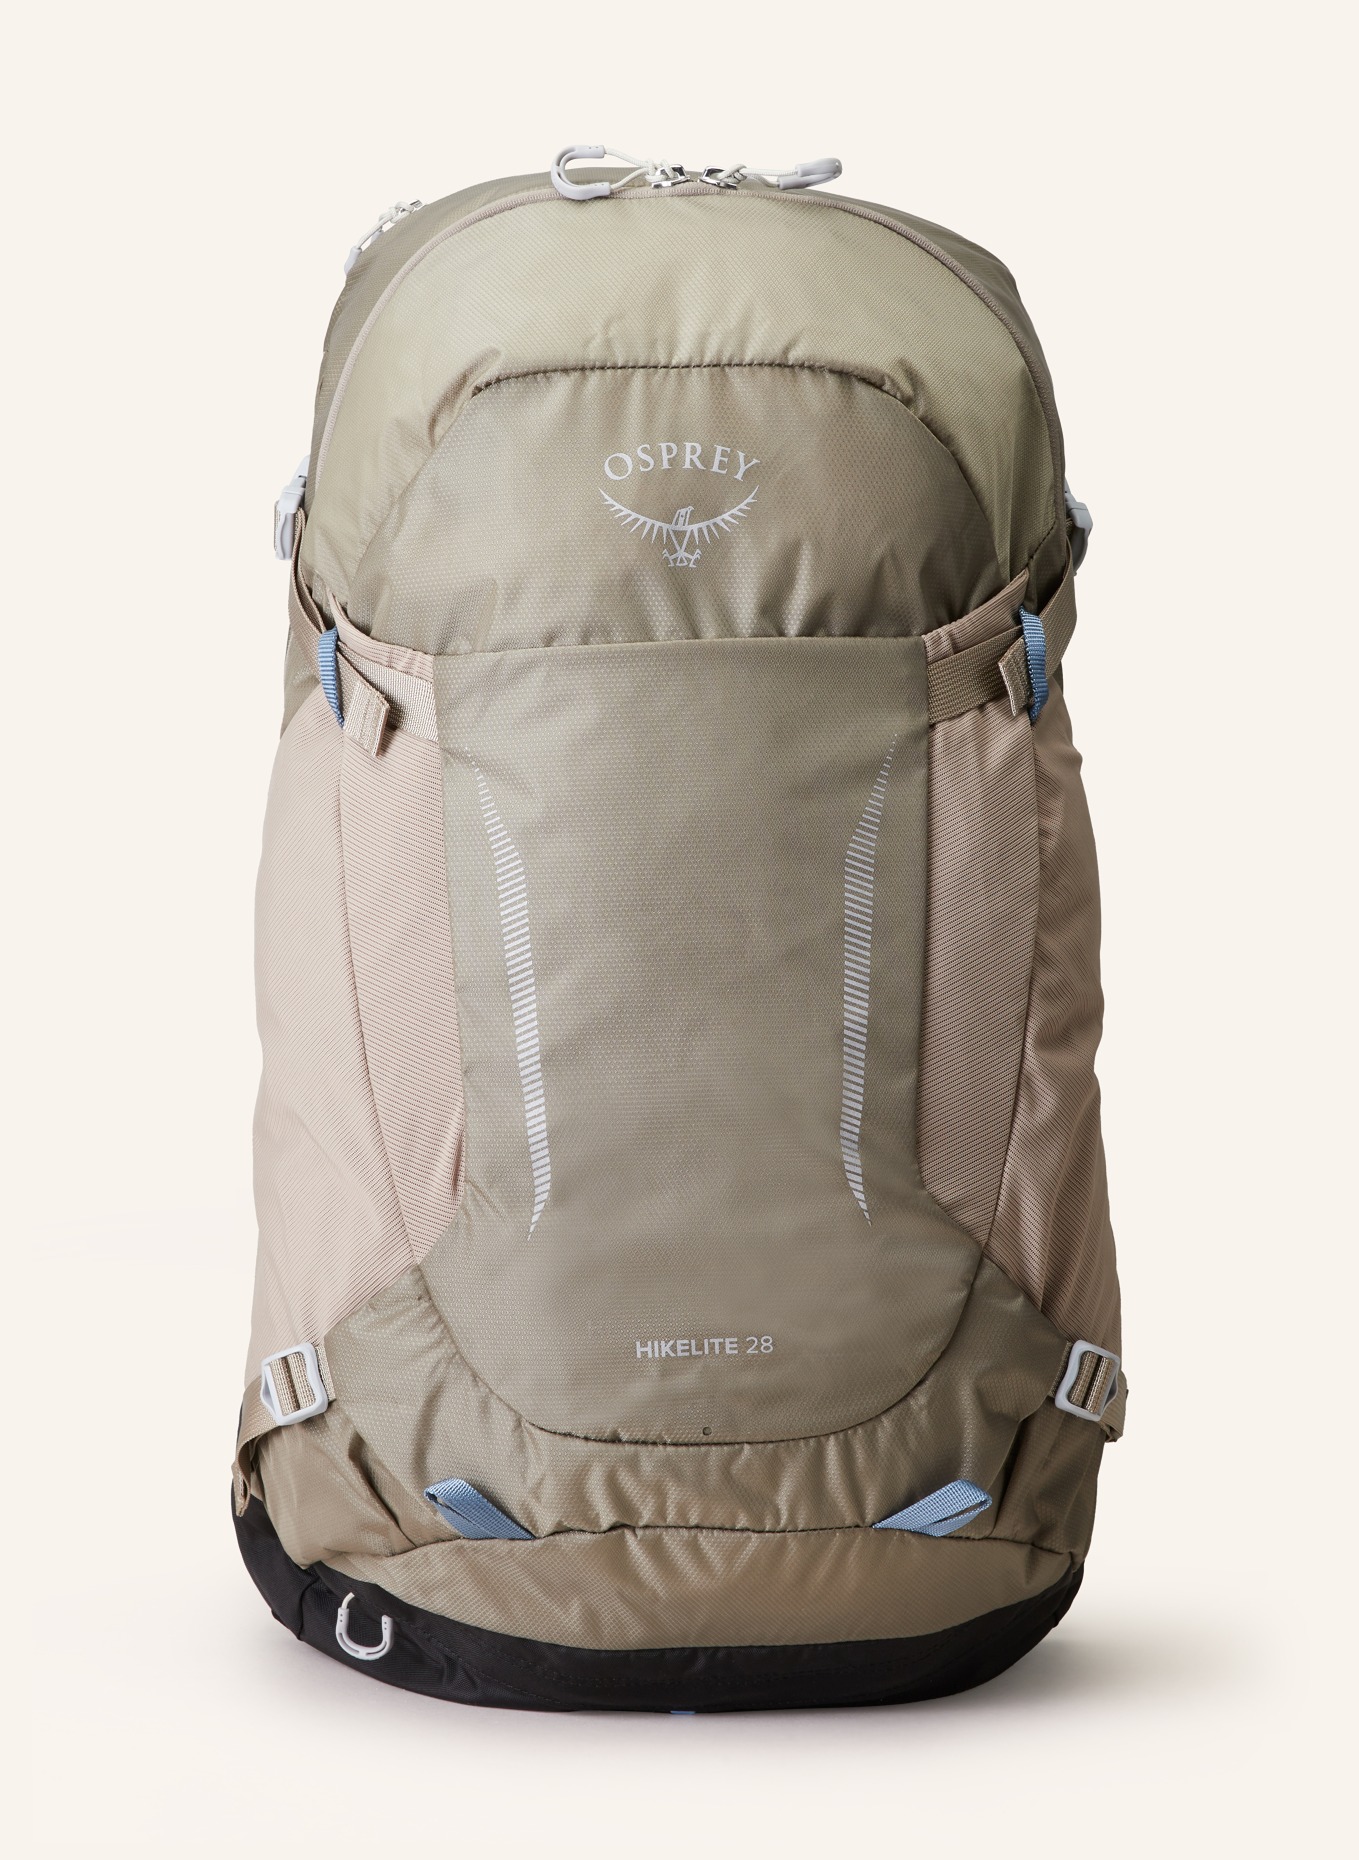 OSPREY Backpack HIKELITE 28 l, Color: GRAY (Image 1)